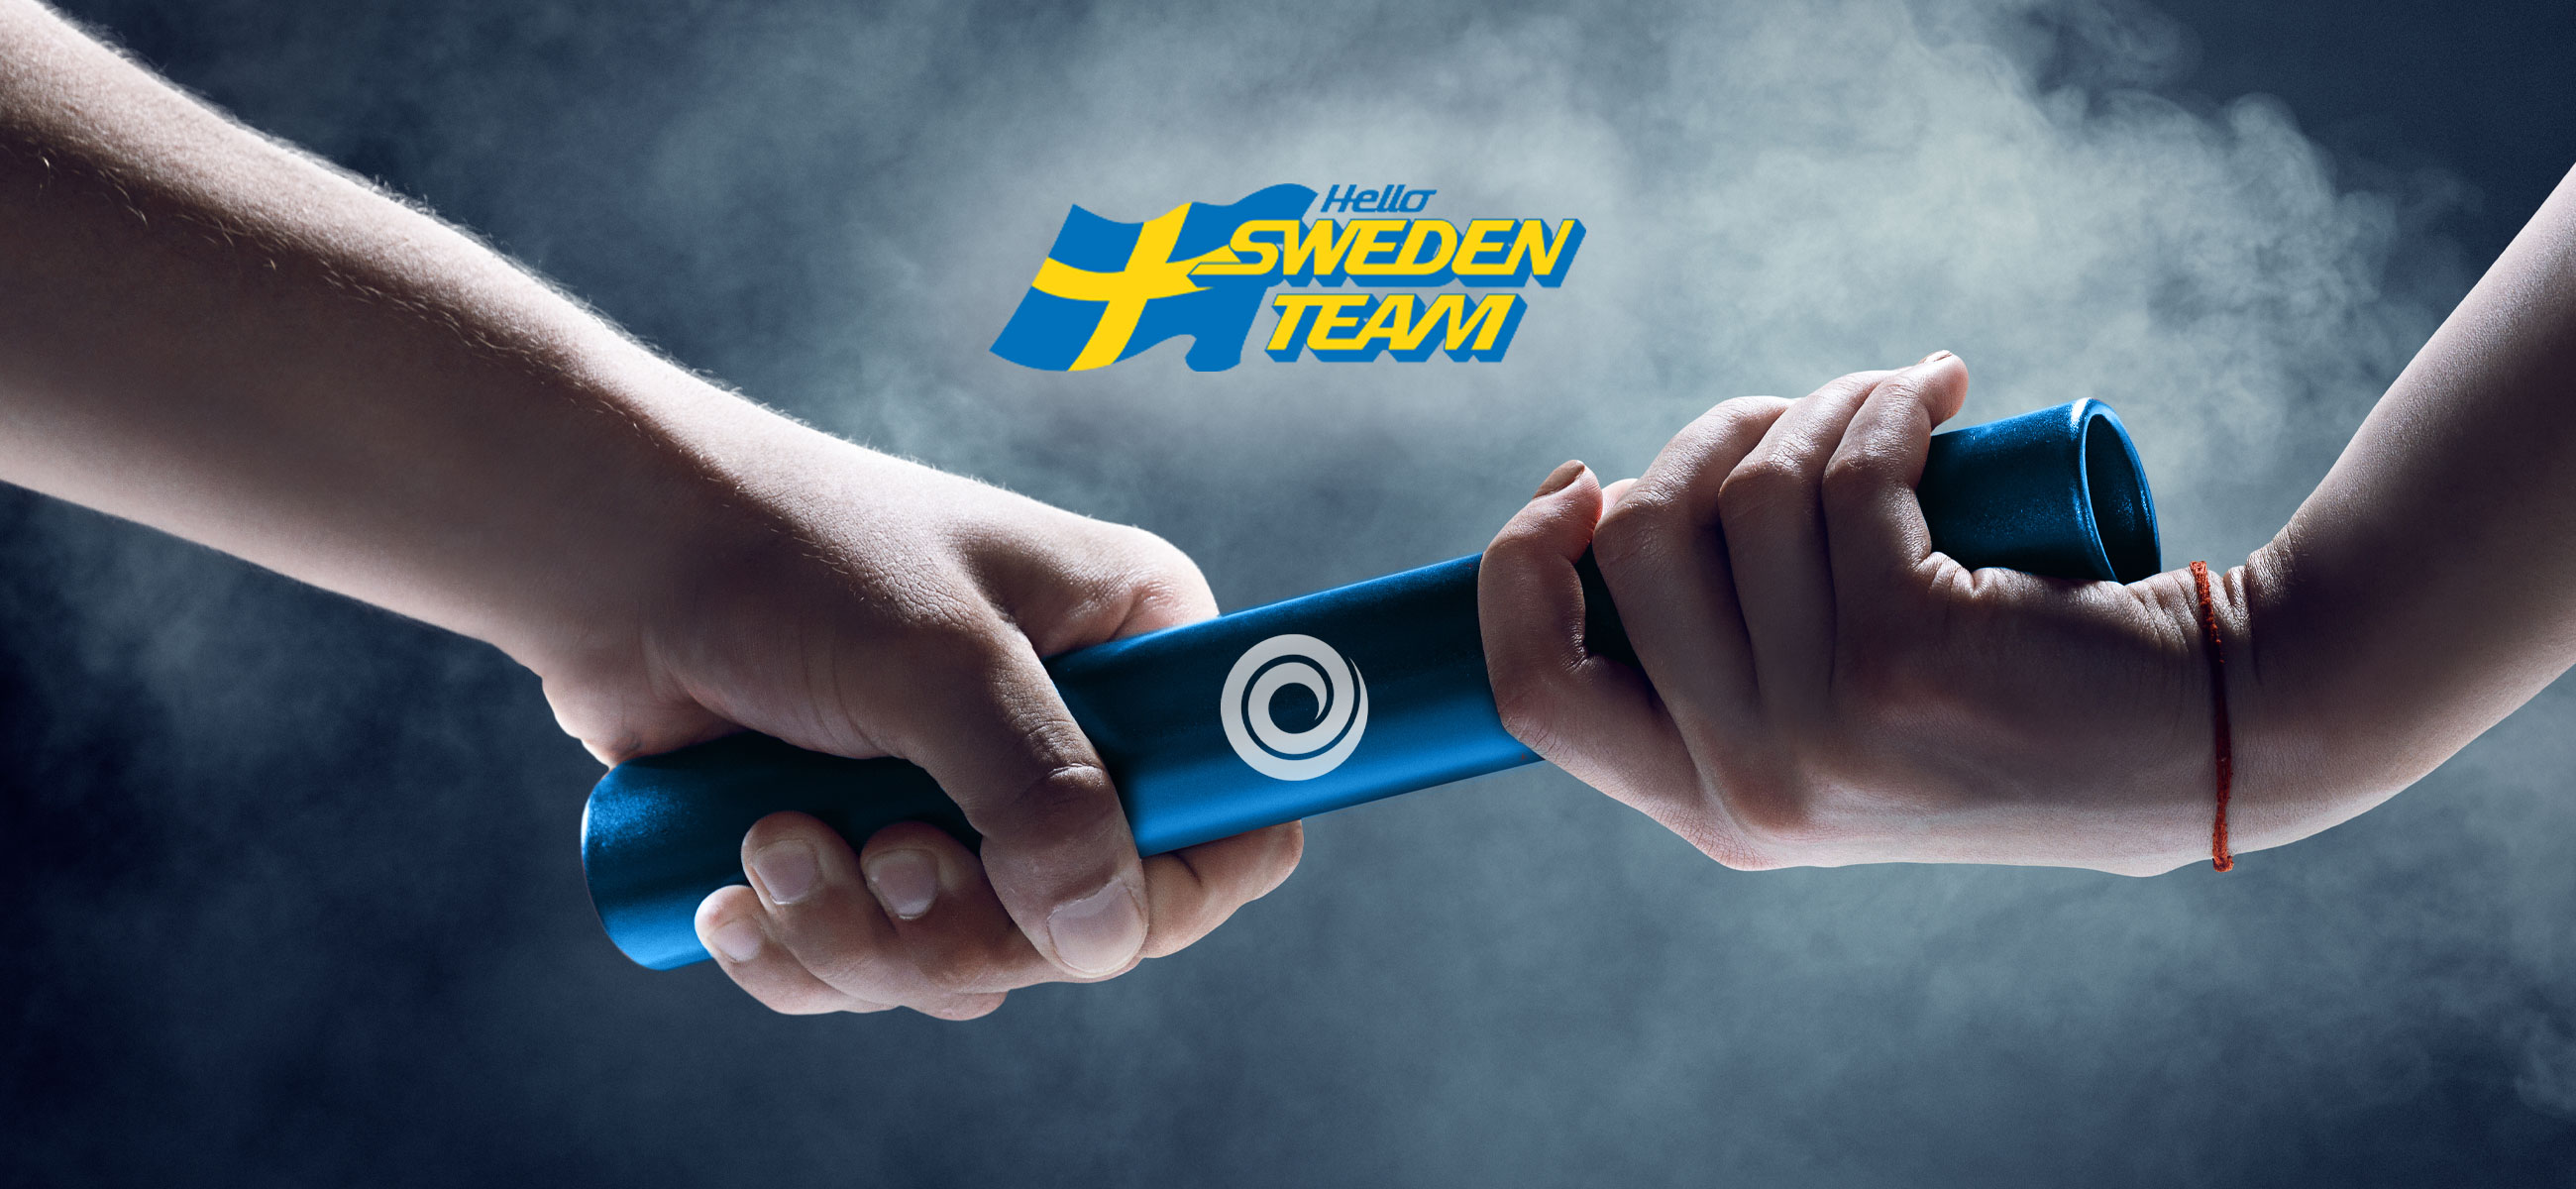 EWES i partnerskap med Hello Sweden